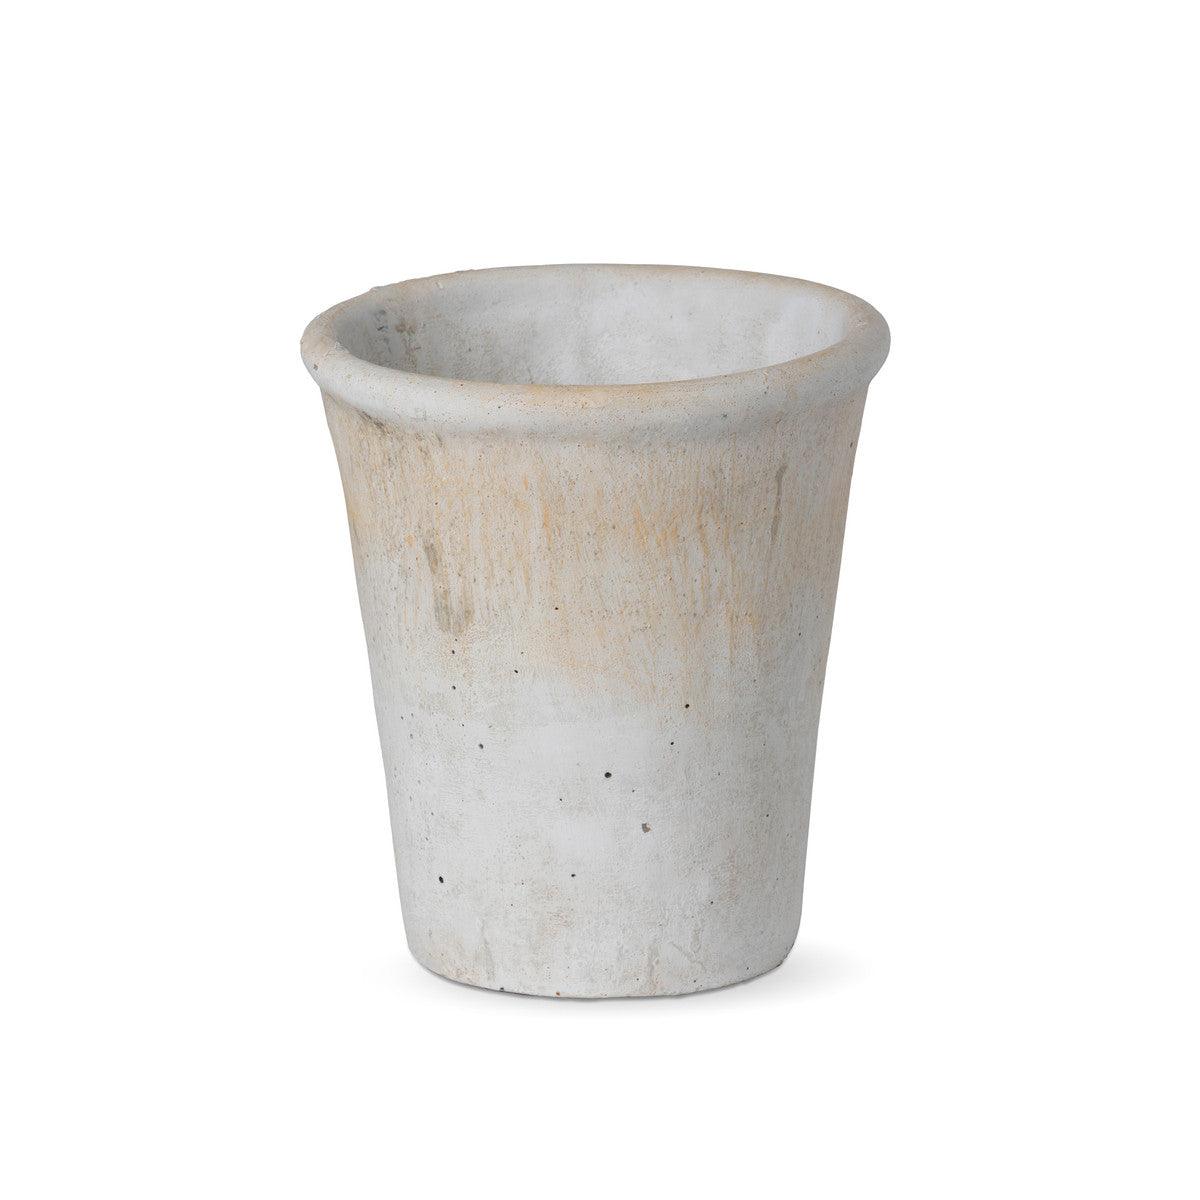 Distressed Concrete Pot, Medium - Signastyle Boutique